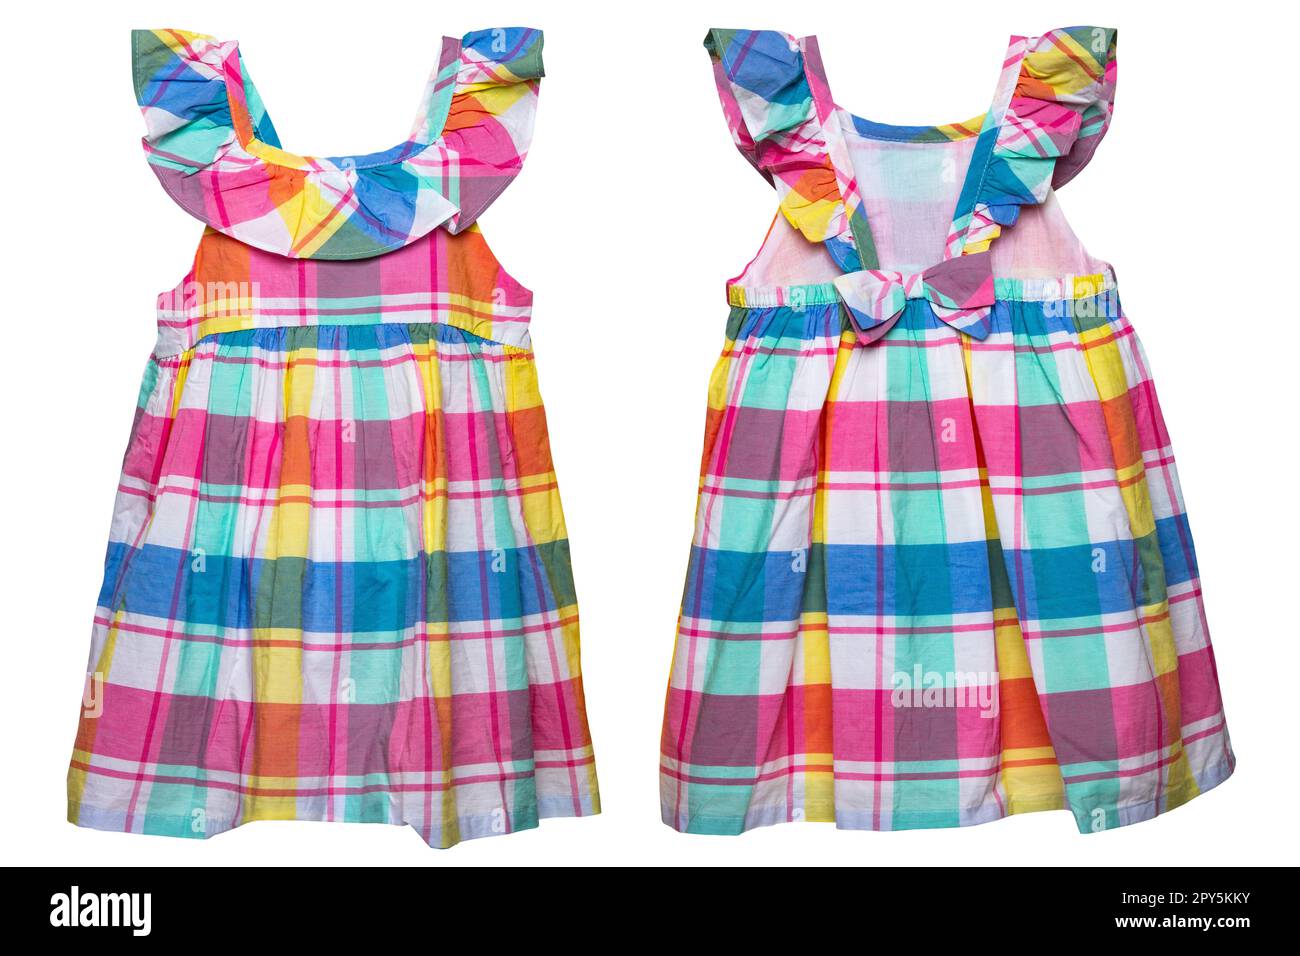 Sommerkleid isoliert. Nahaufnahme eines farbenfrohen, ärmellosen Baby-Mädchenkleids mit Karomuster, isoliert auf weißem Hintergrund. Frühlingsmode für Kinder. Vorder- und Rückansicht. Stockfoto